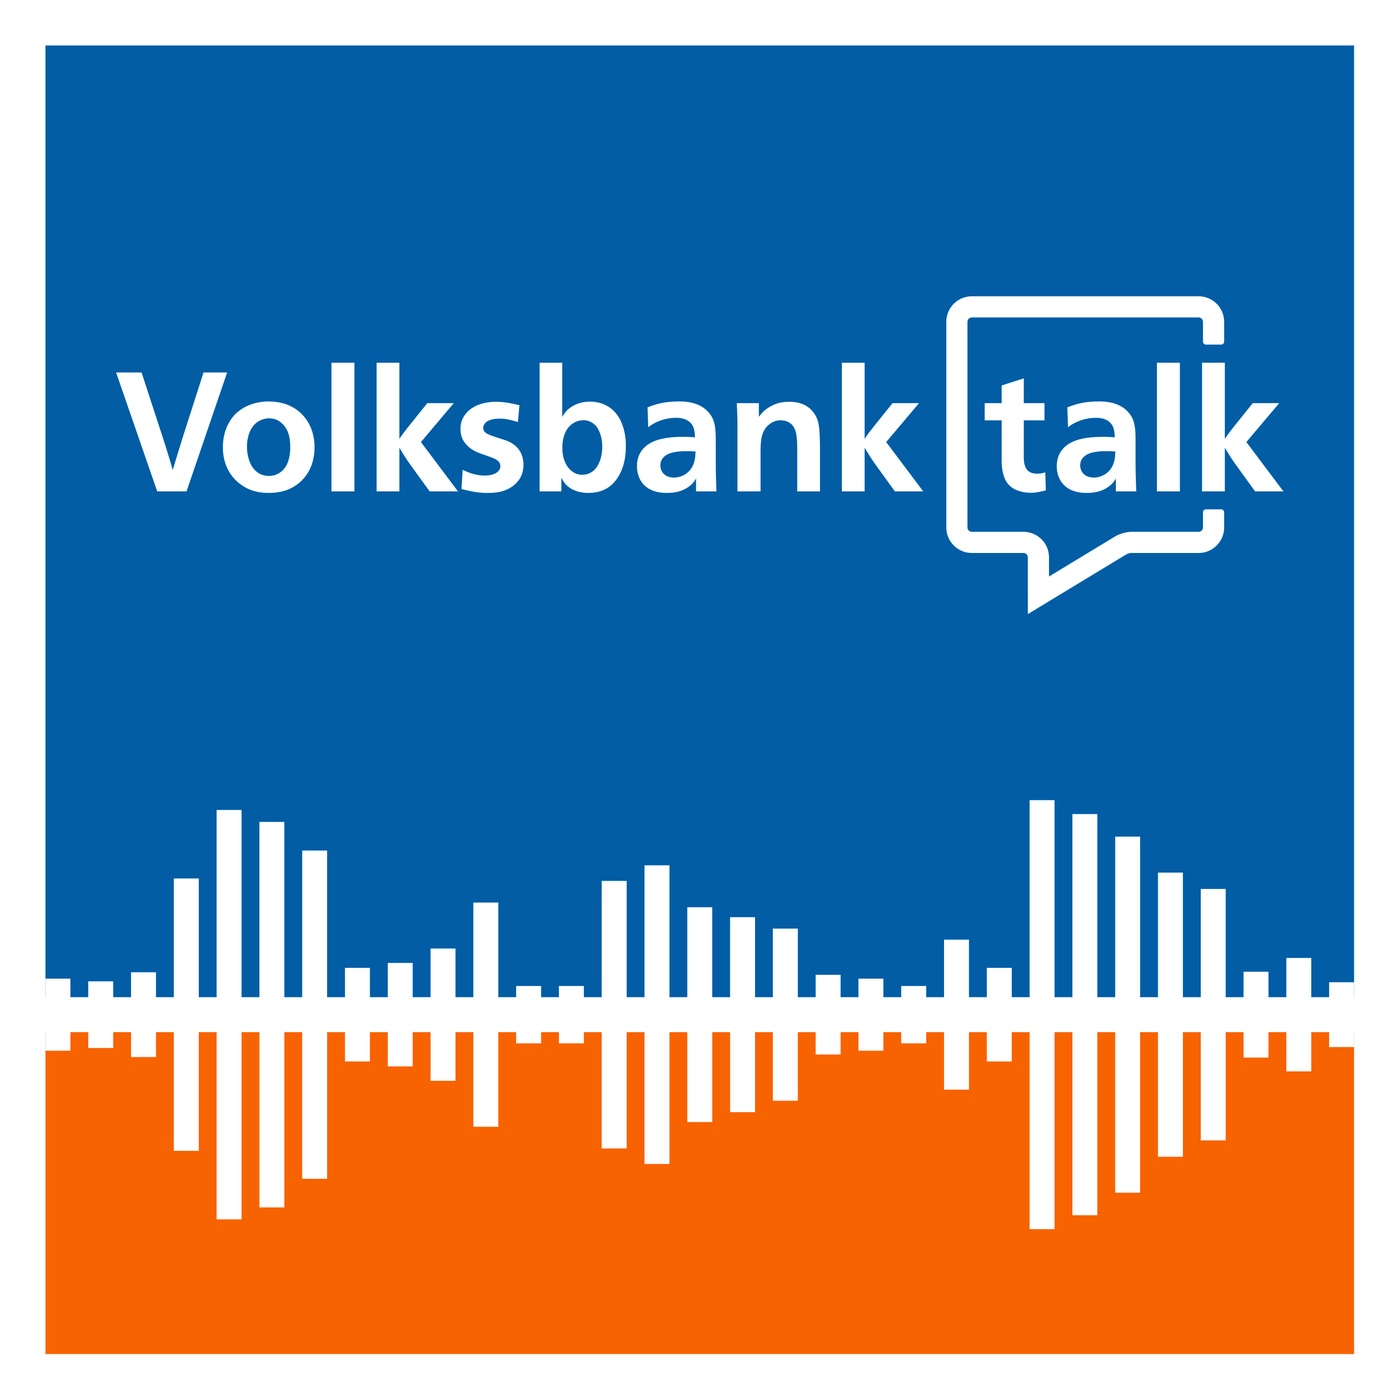 VolksbankTalk